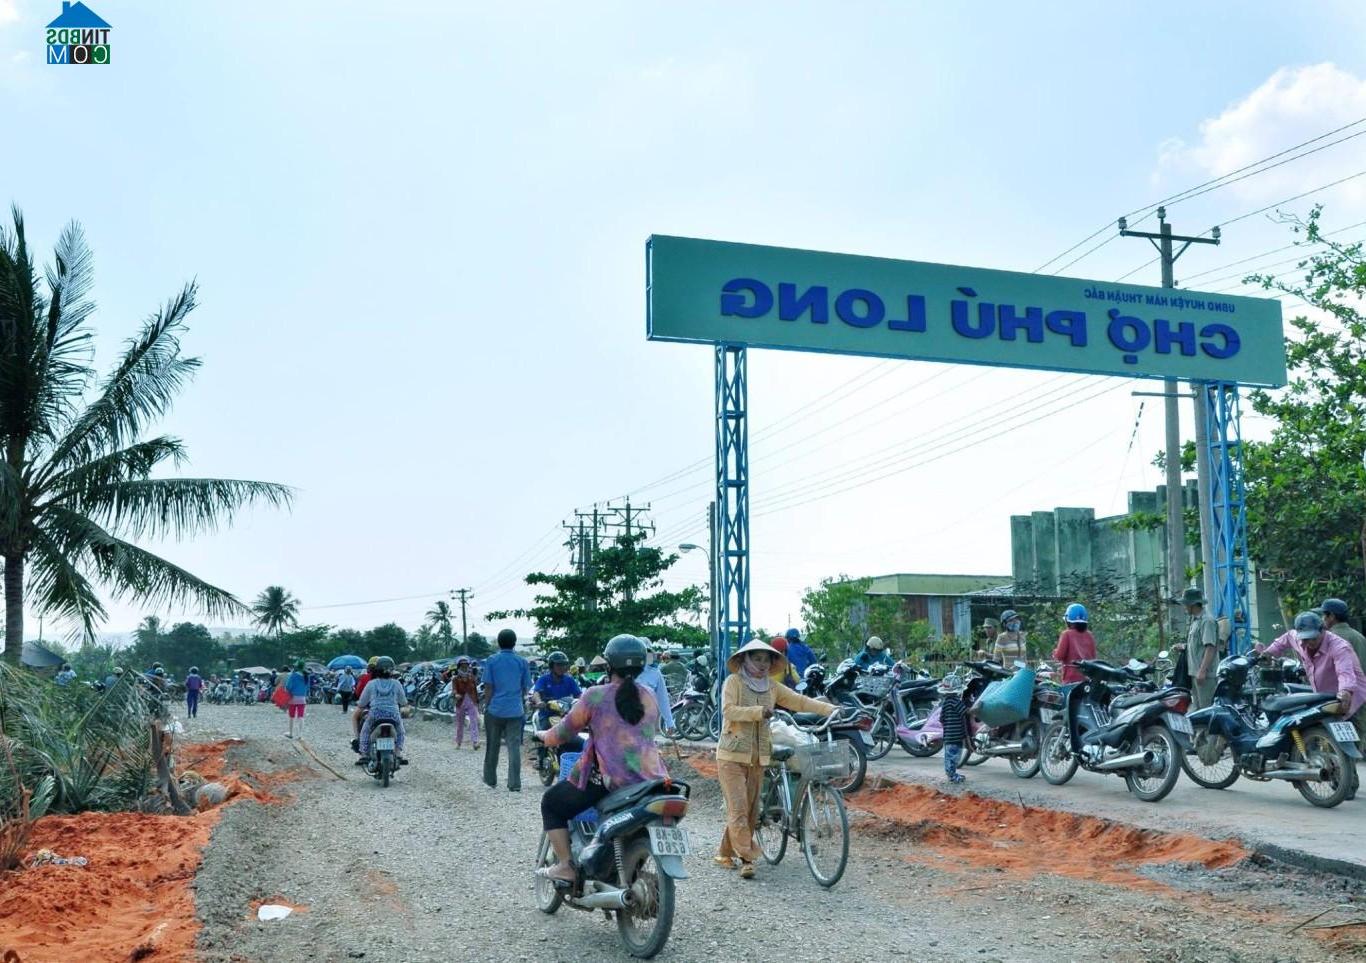 Hình ảnh Phú Long, Hàm Thuận Bắc, Bình Thuận  